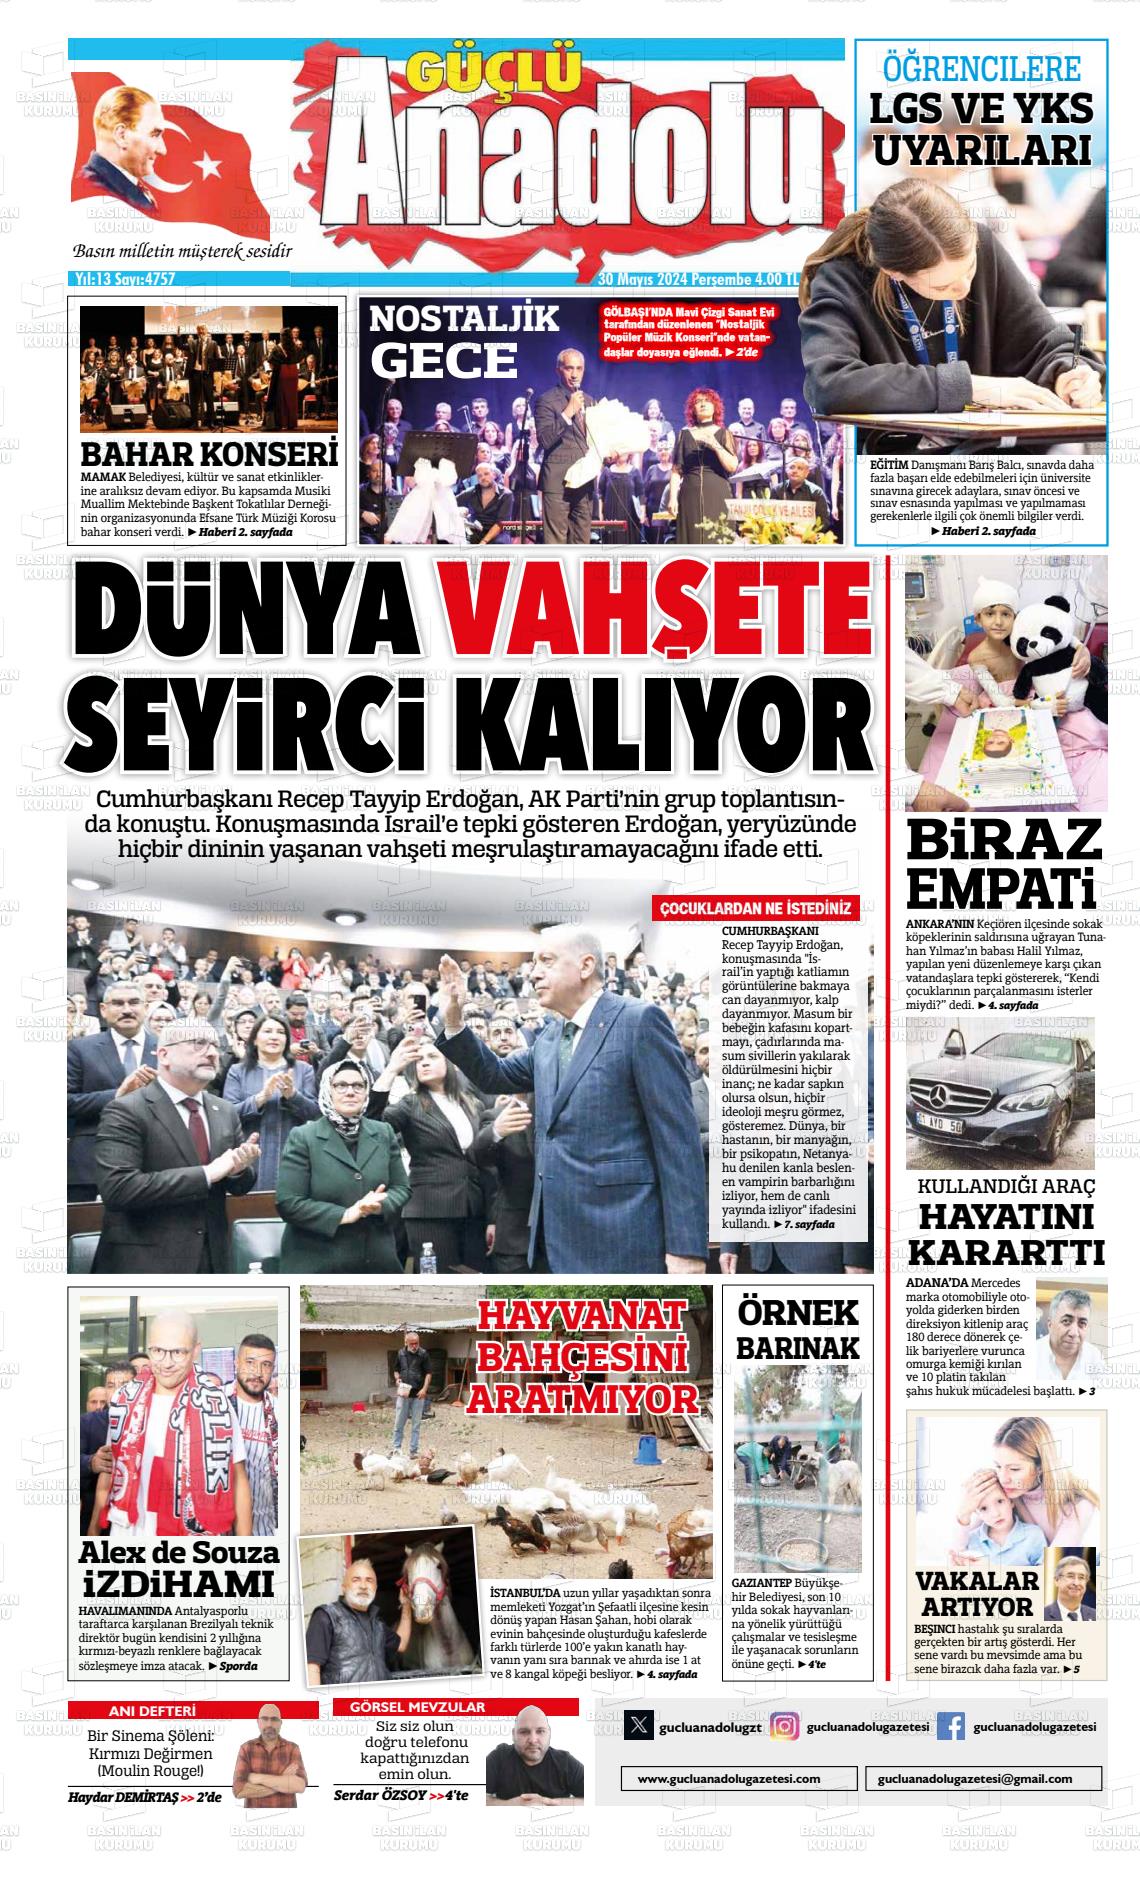 GÜÇLÜ ANADOLU Gazetesi